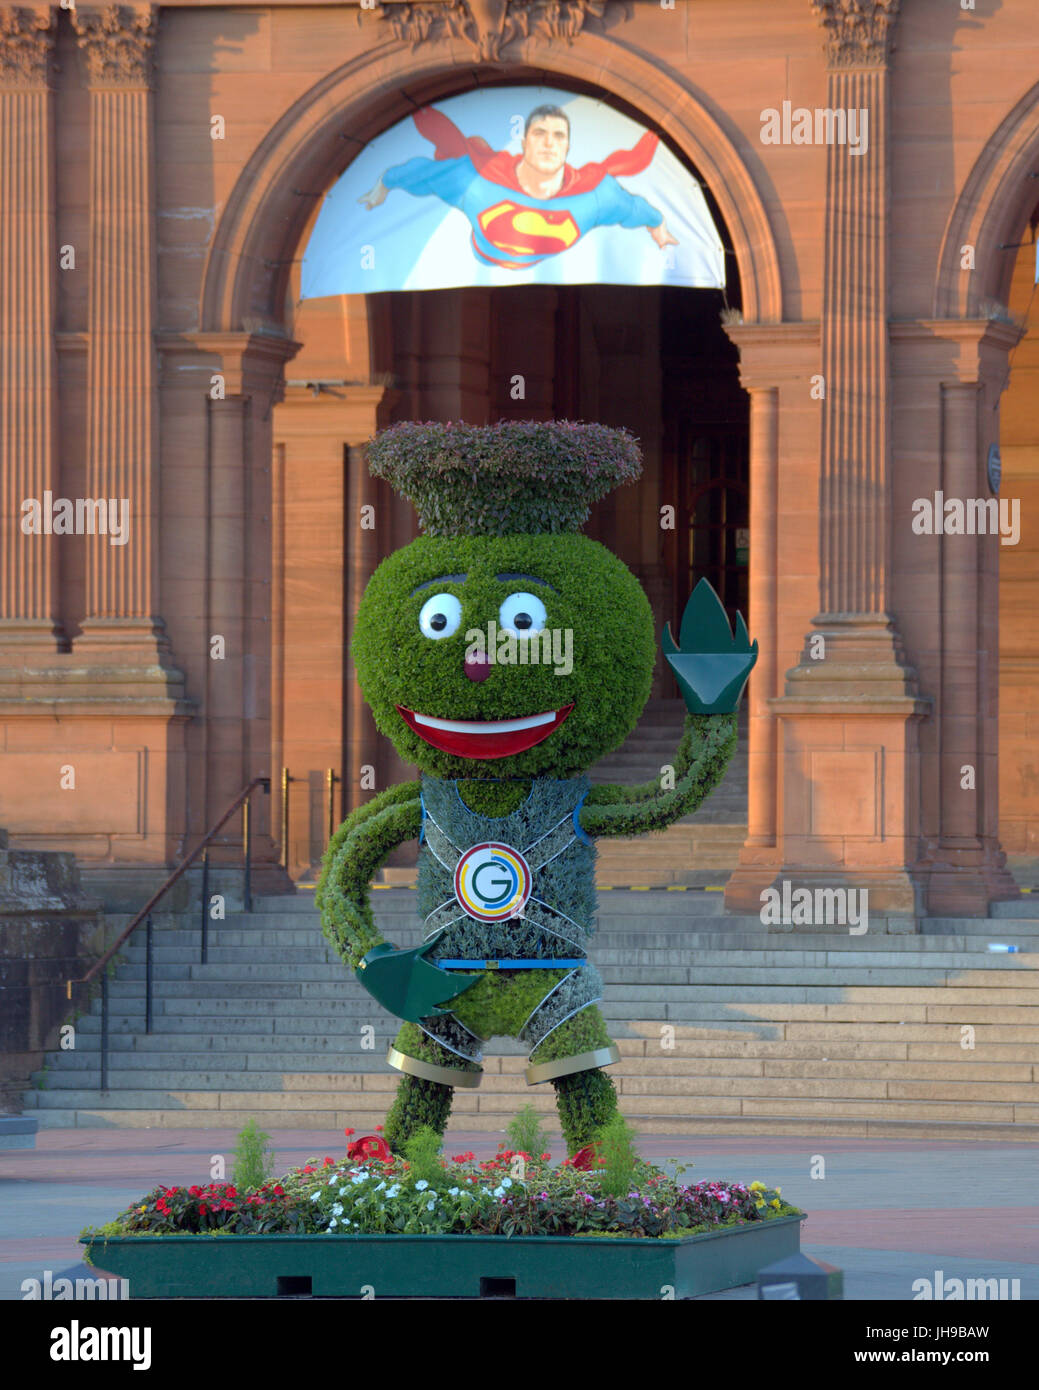 Das Maskottchen der Commonwealth Games 2014 Clyde auf seinem Posten Spiele Ruhestätte Glasgow Kelvingrove Museum mit Superhelden Superman sein Ego zu materialisieren Stockfoto